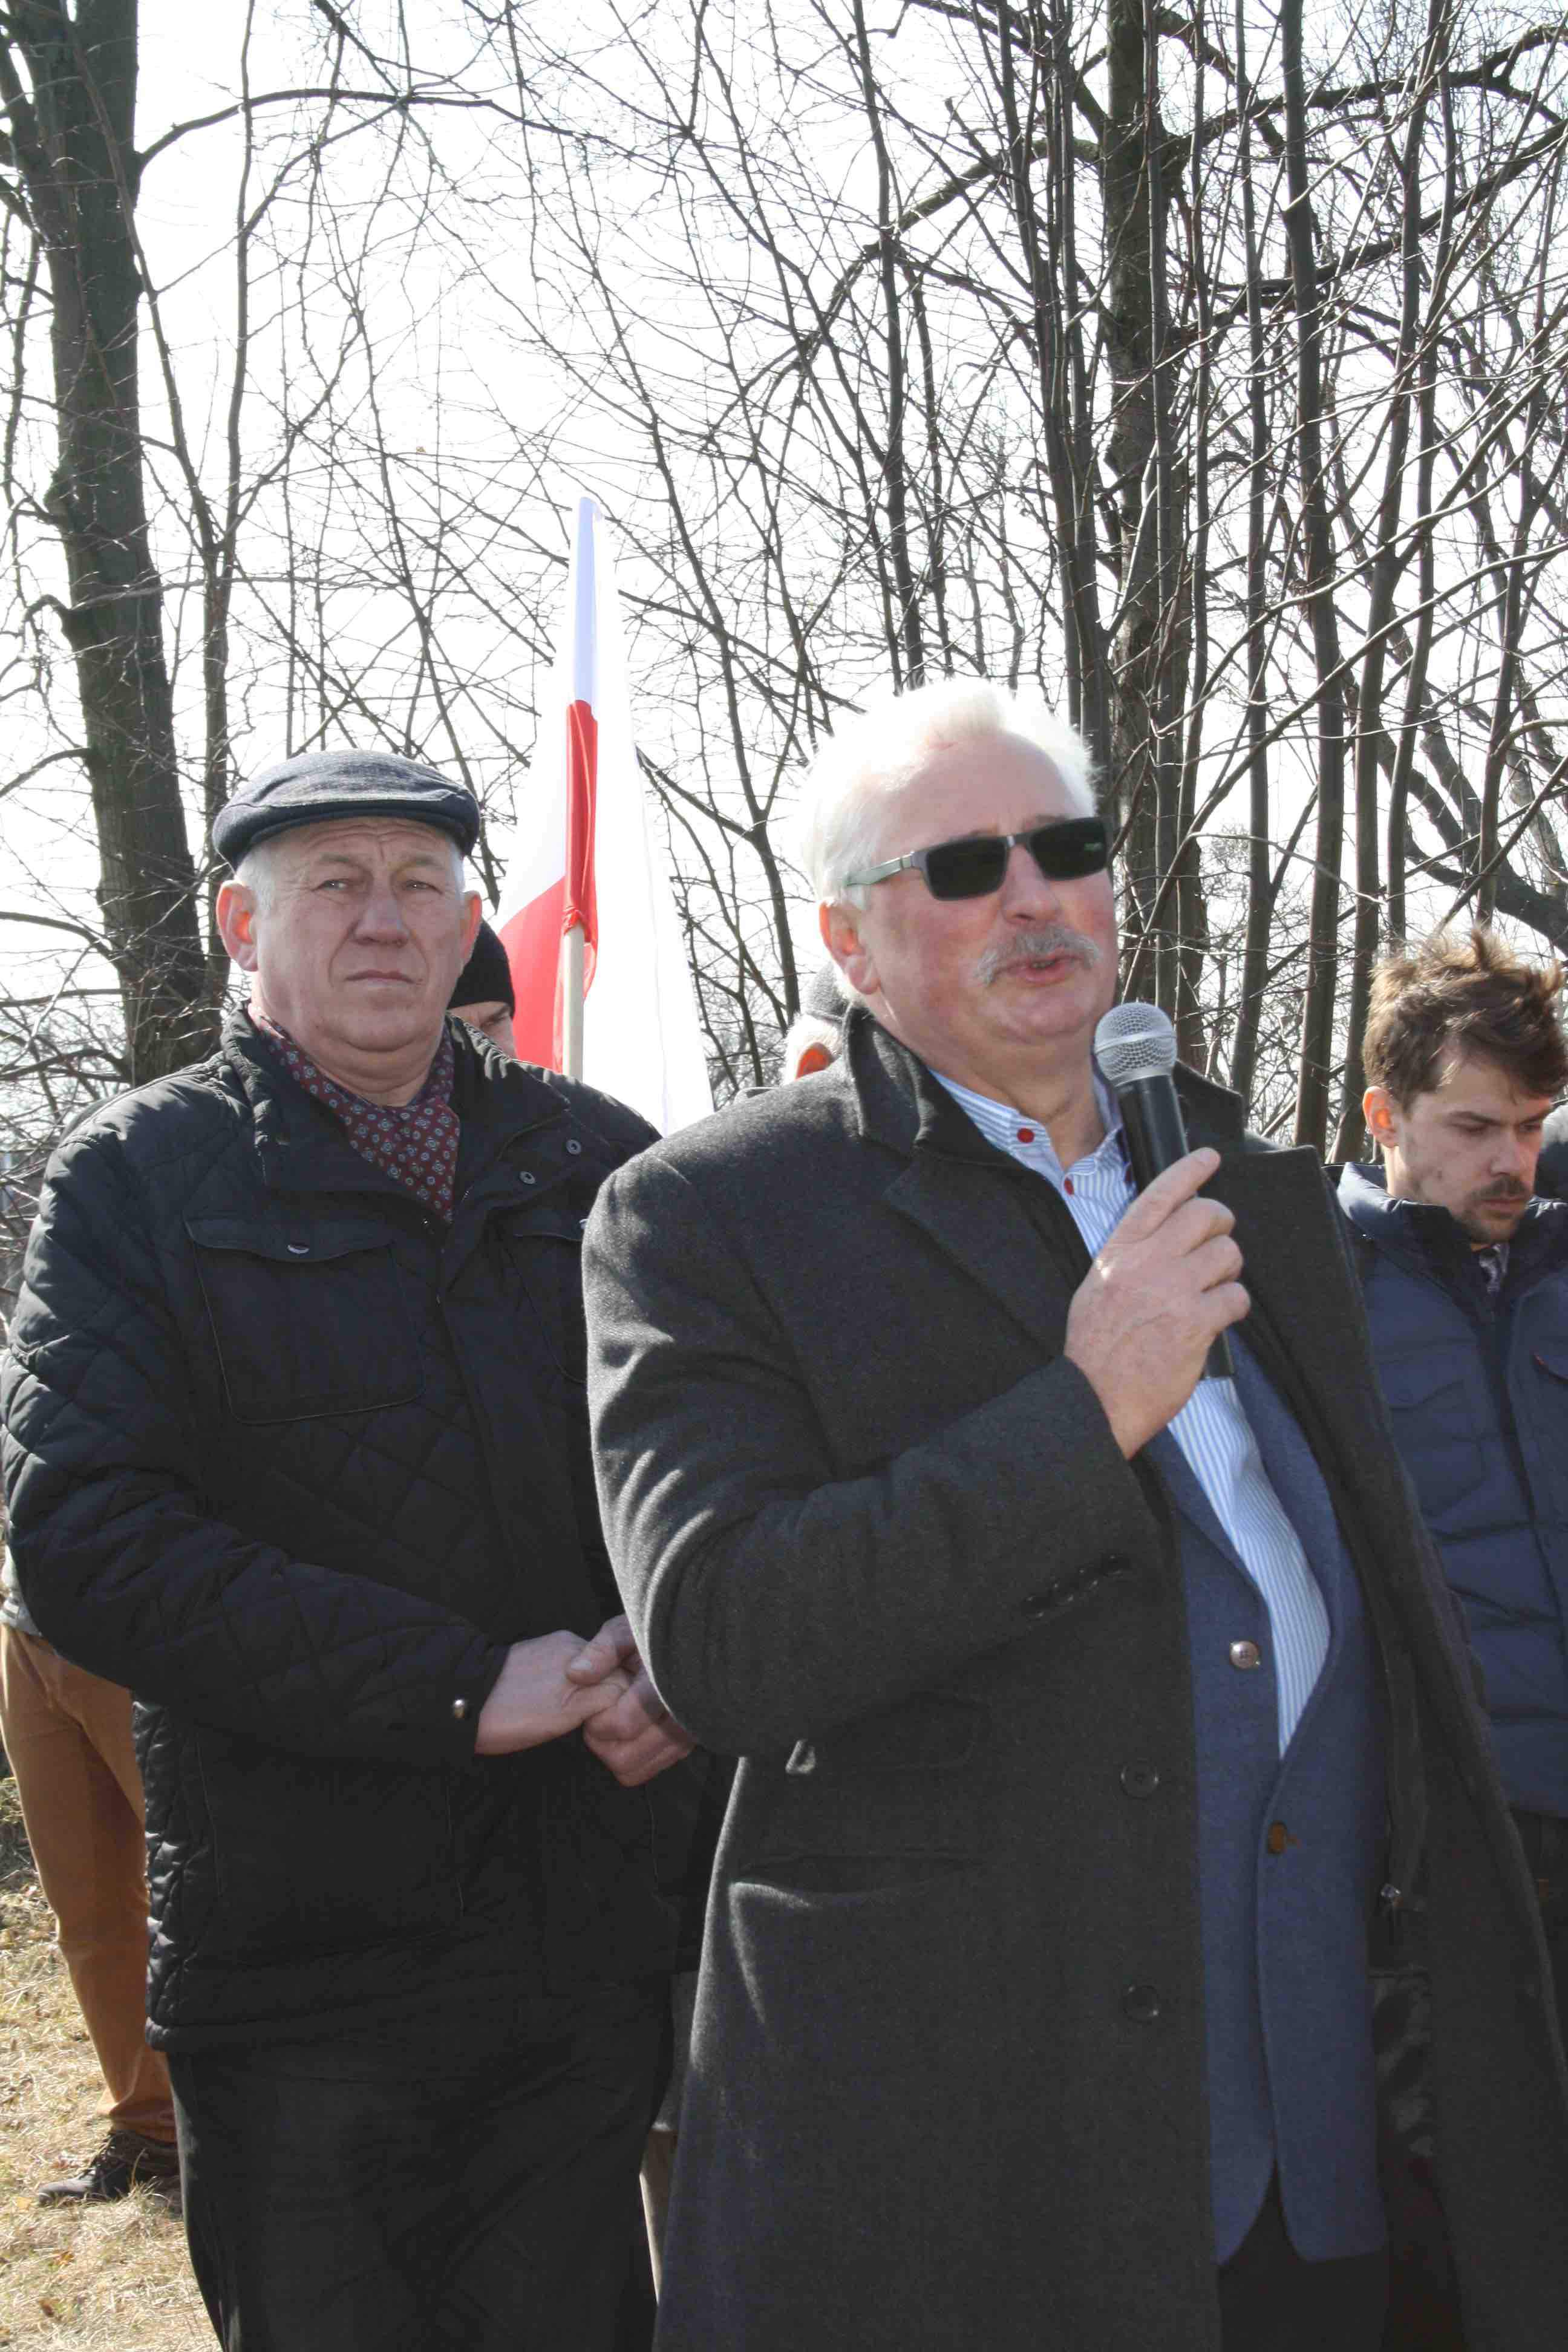 Ministerstwo musi wprowadzić zmiany systemowe, żeby pomóc polskiemu rolnictwu - mówił Mirosław Jackowiak